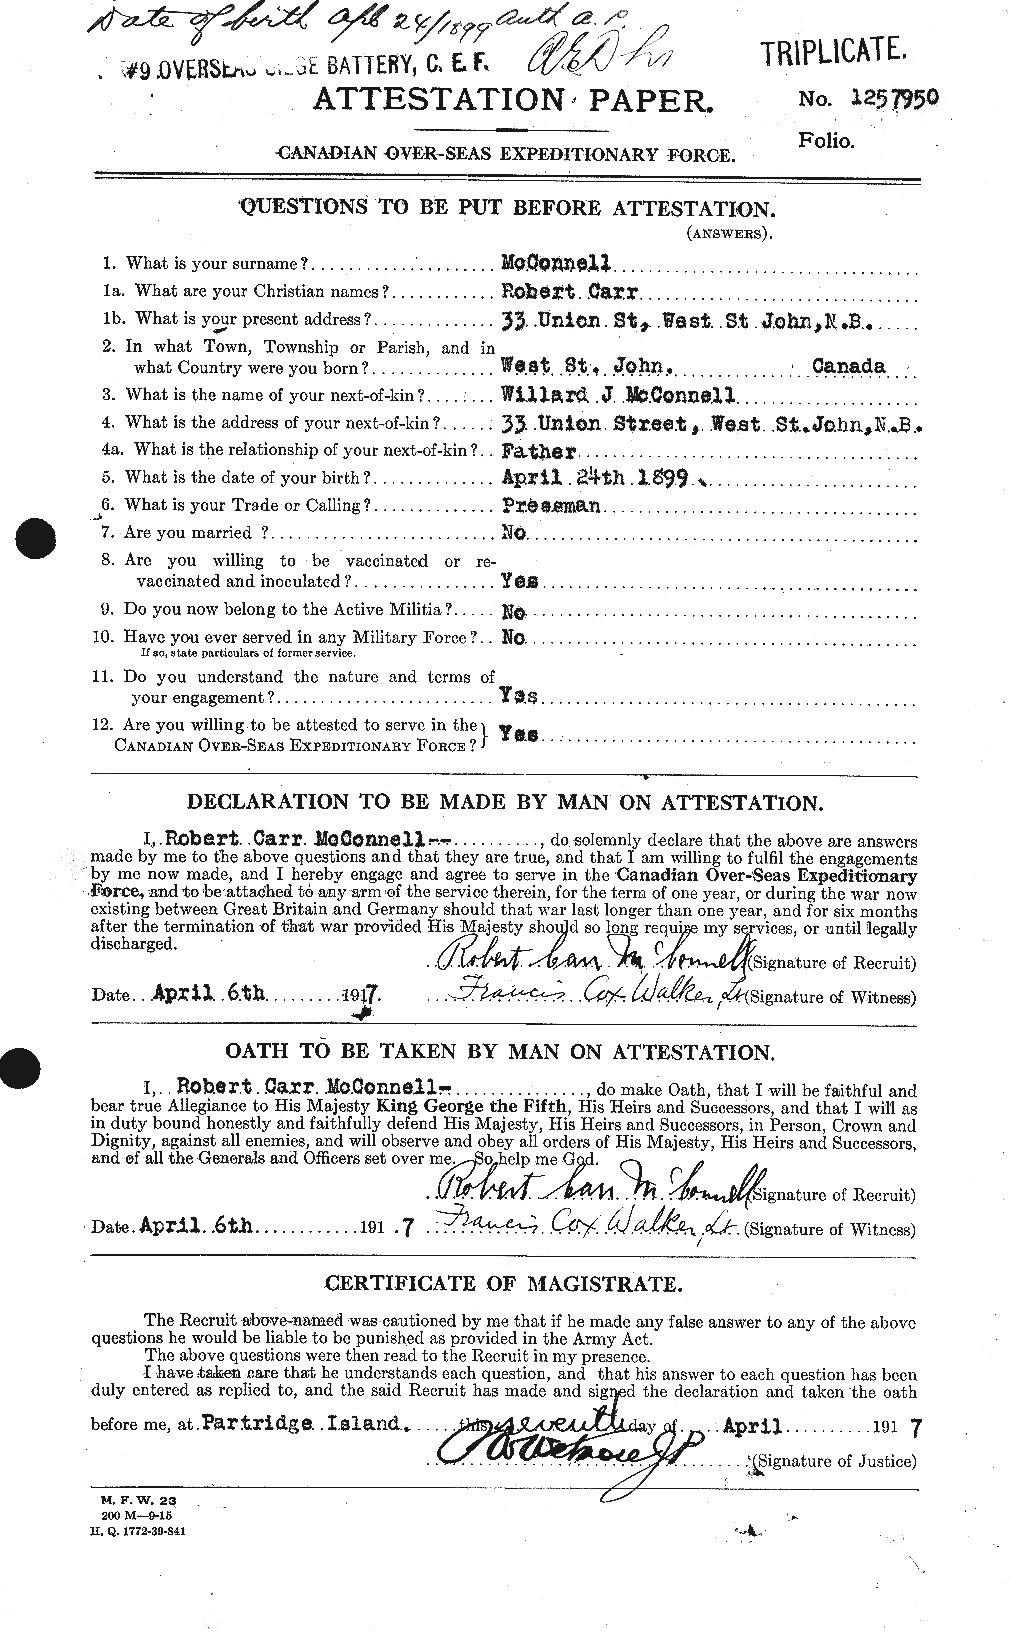 Dossiers du Personnel de la Première Guerre mondiale - CEC 134398a